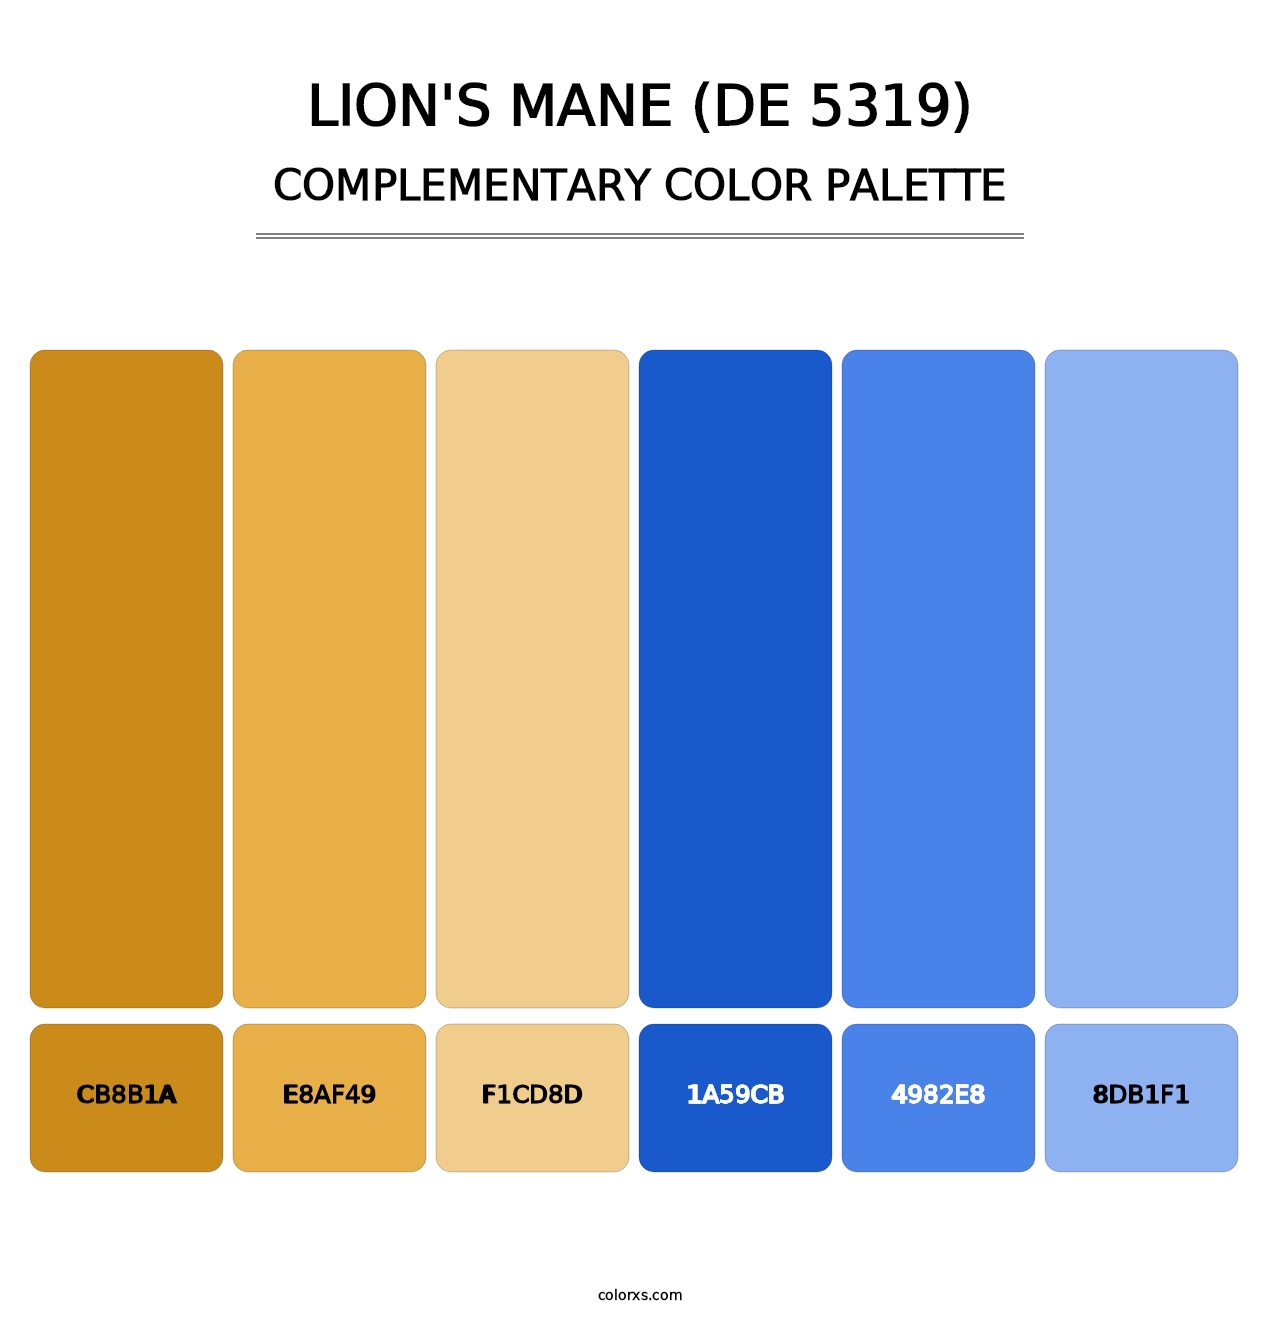 Lion's Mane (DE 5319) - Complementary Color Palette